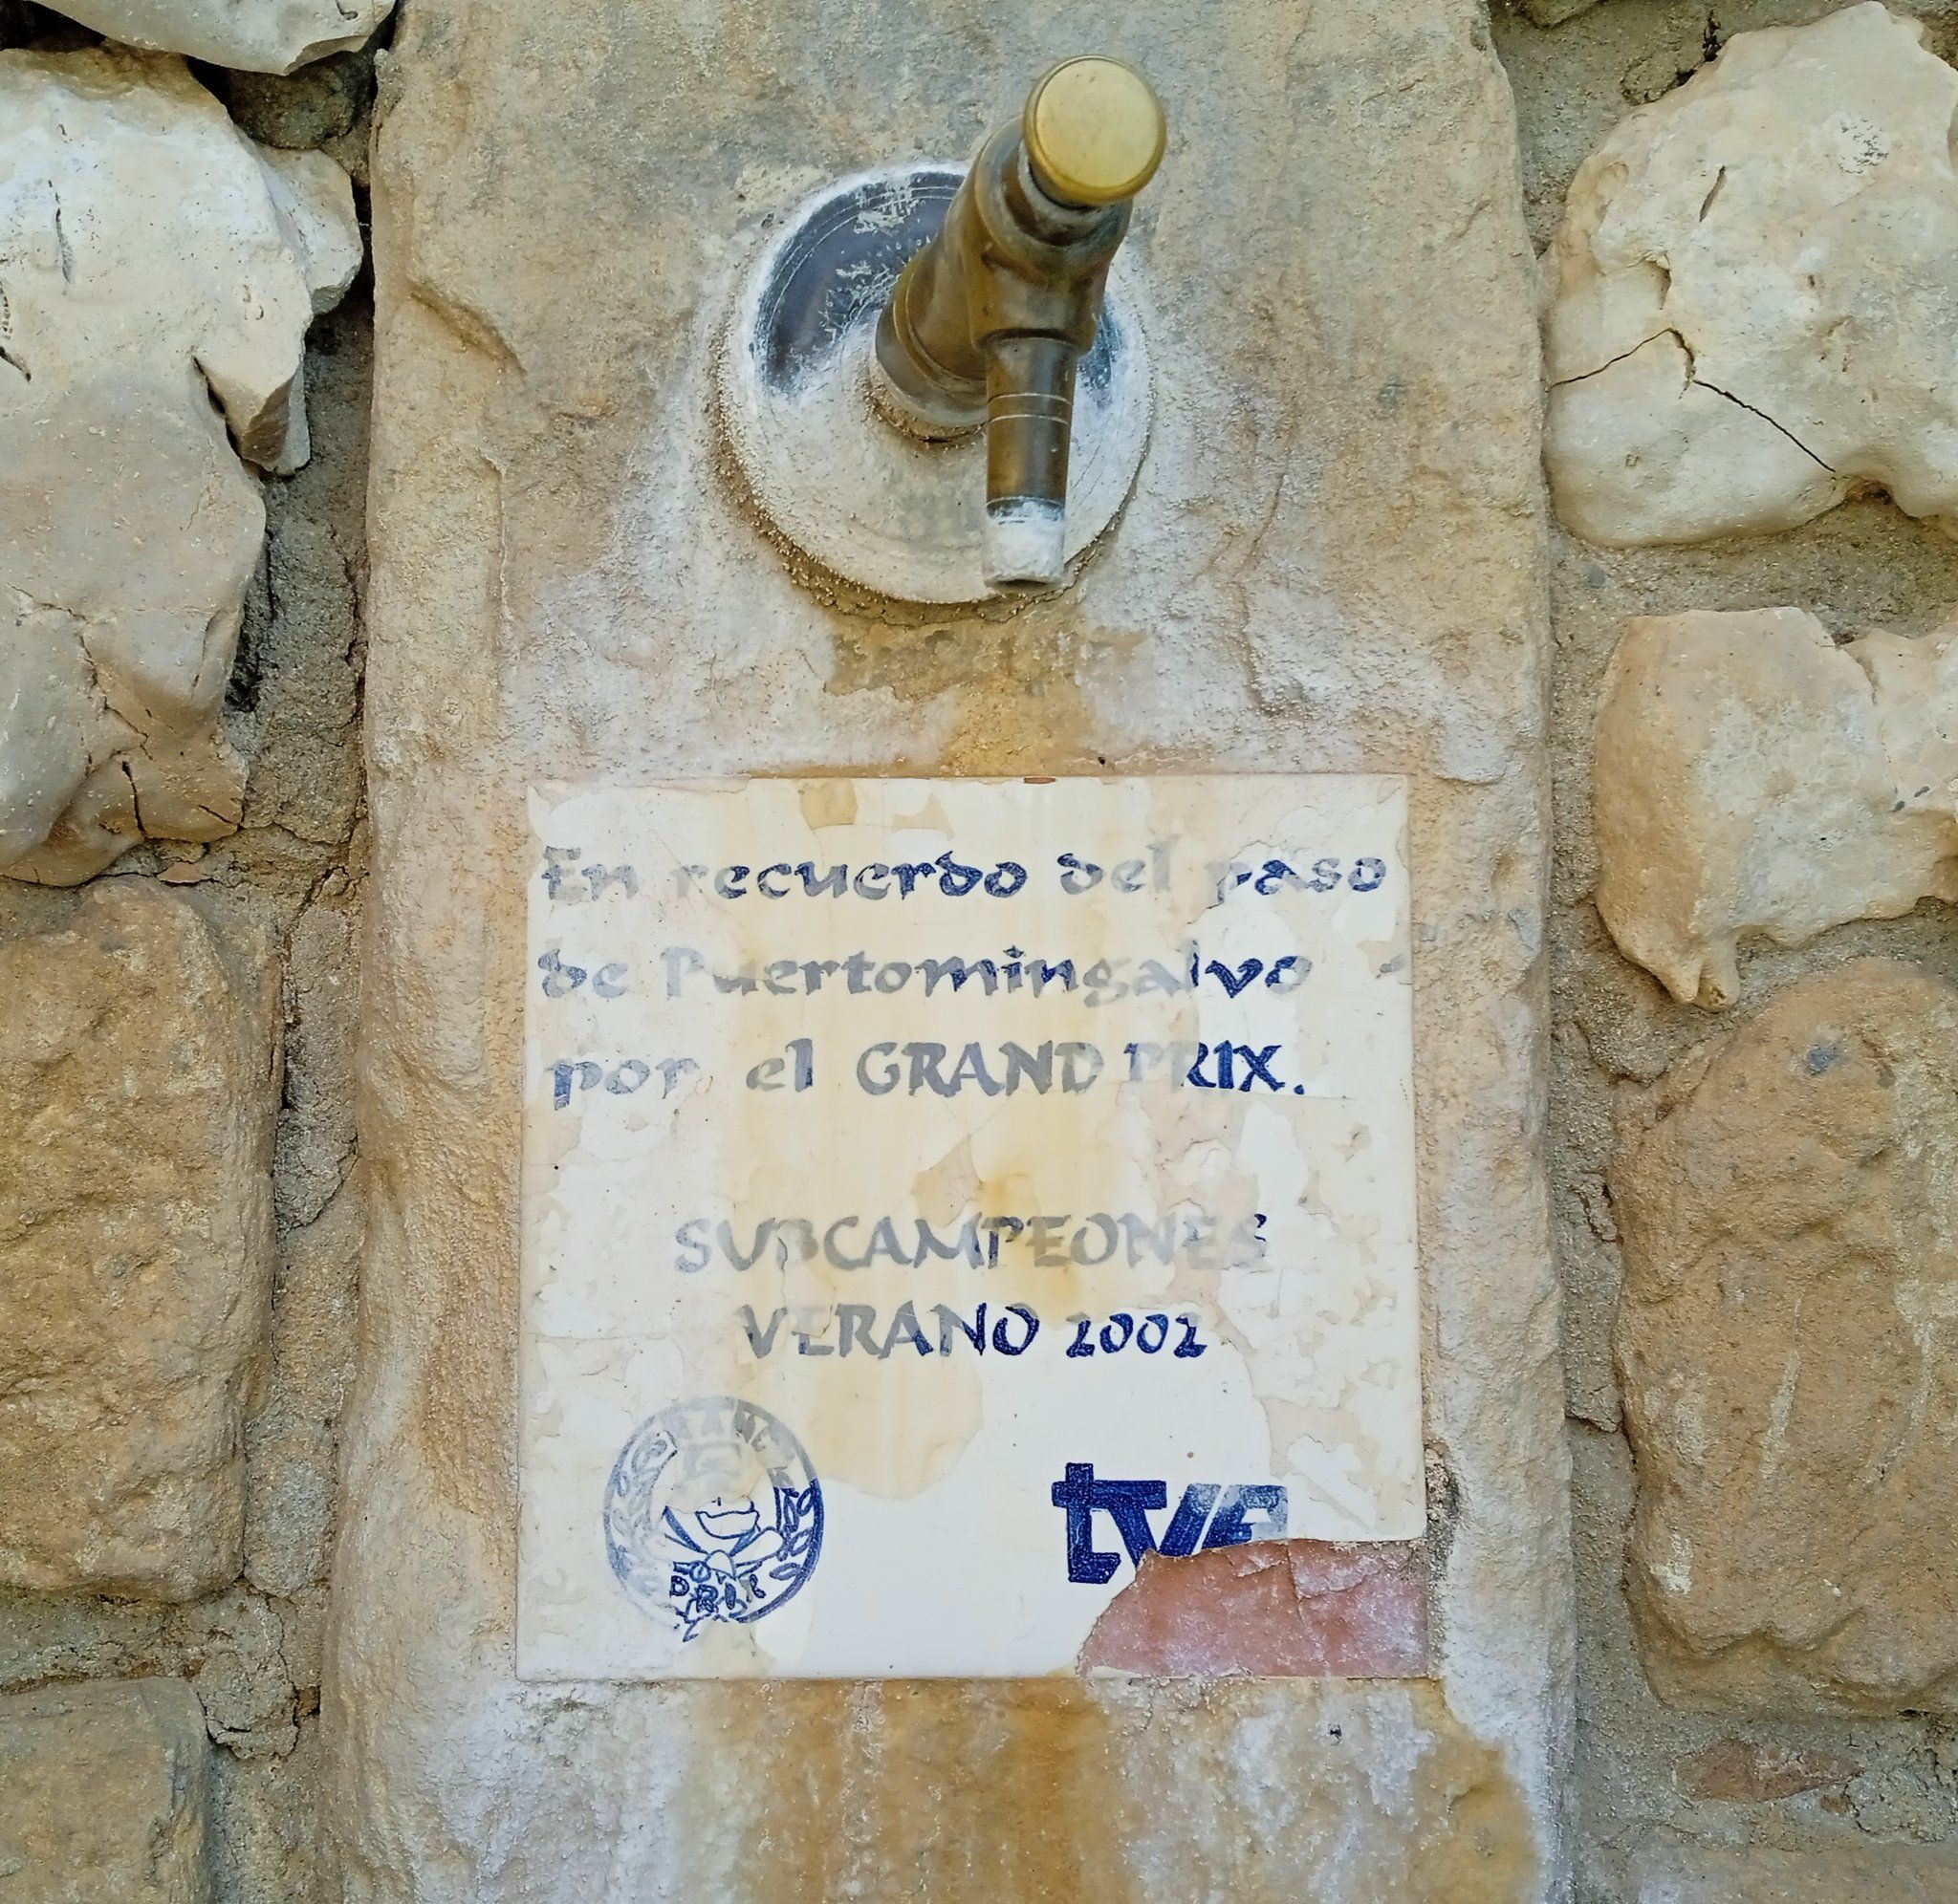 'Honor y gloria': La placa junto a la fuente en un pueblo de Teruel se hace viral en Twitter (Foto, Twitter)